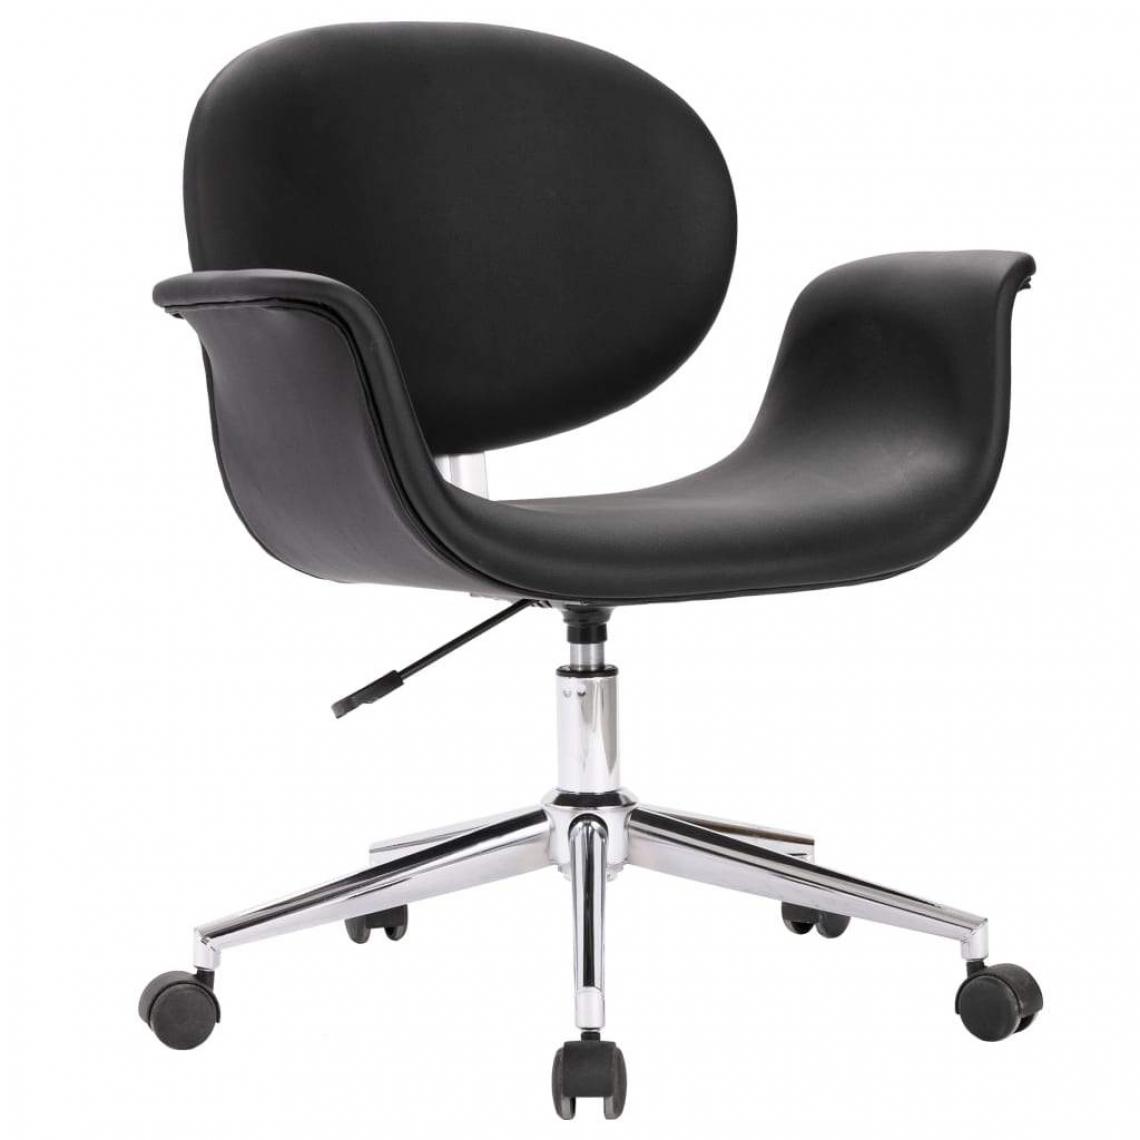 Decoshop26 - Chaise pivotante de salle à manger design contemporain similicuir noir CDS020098 - Chaises